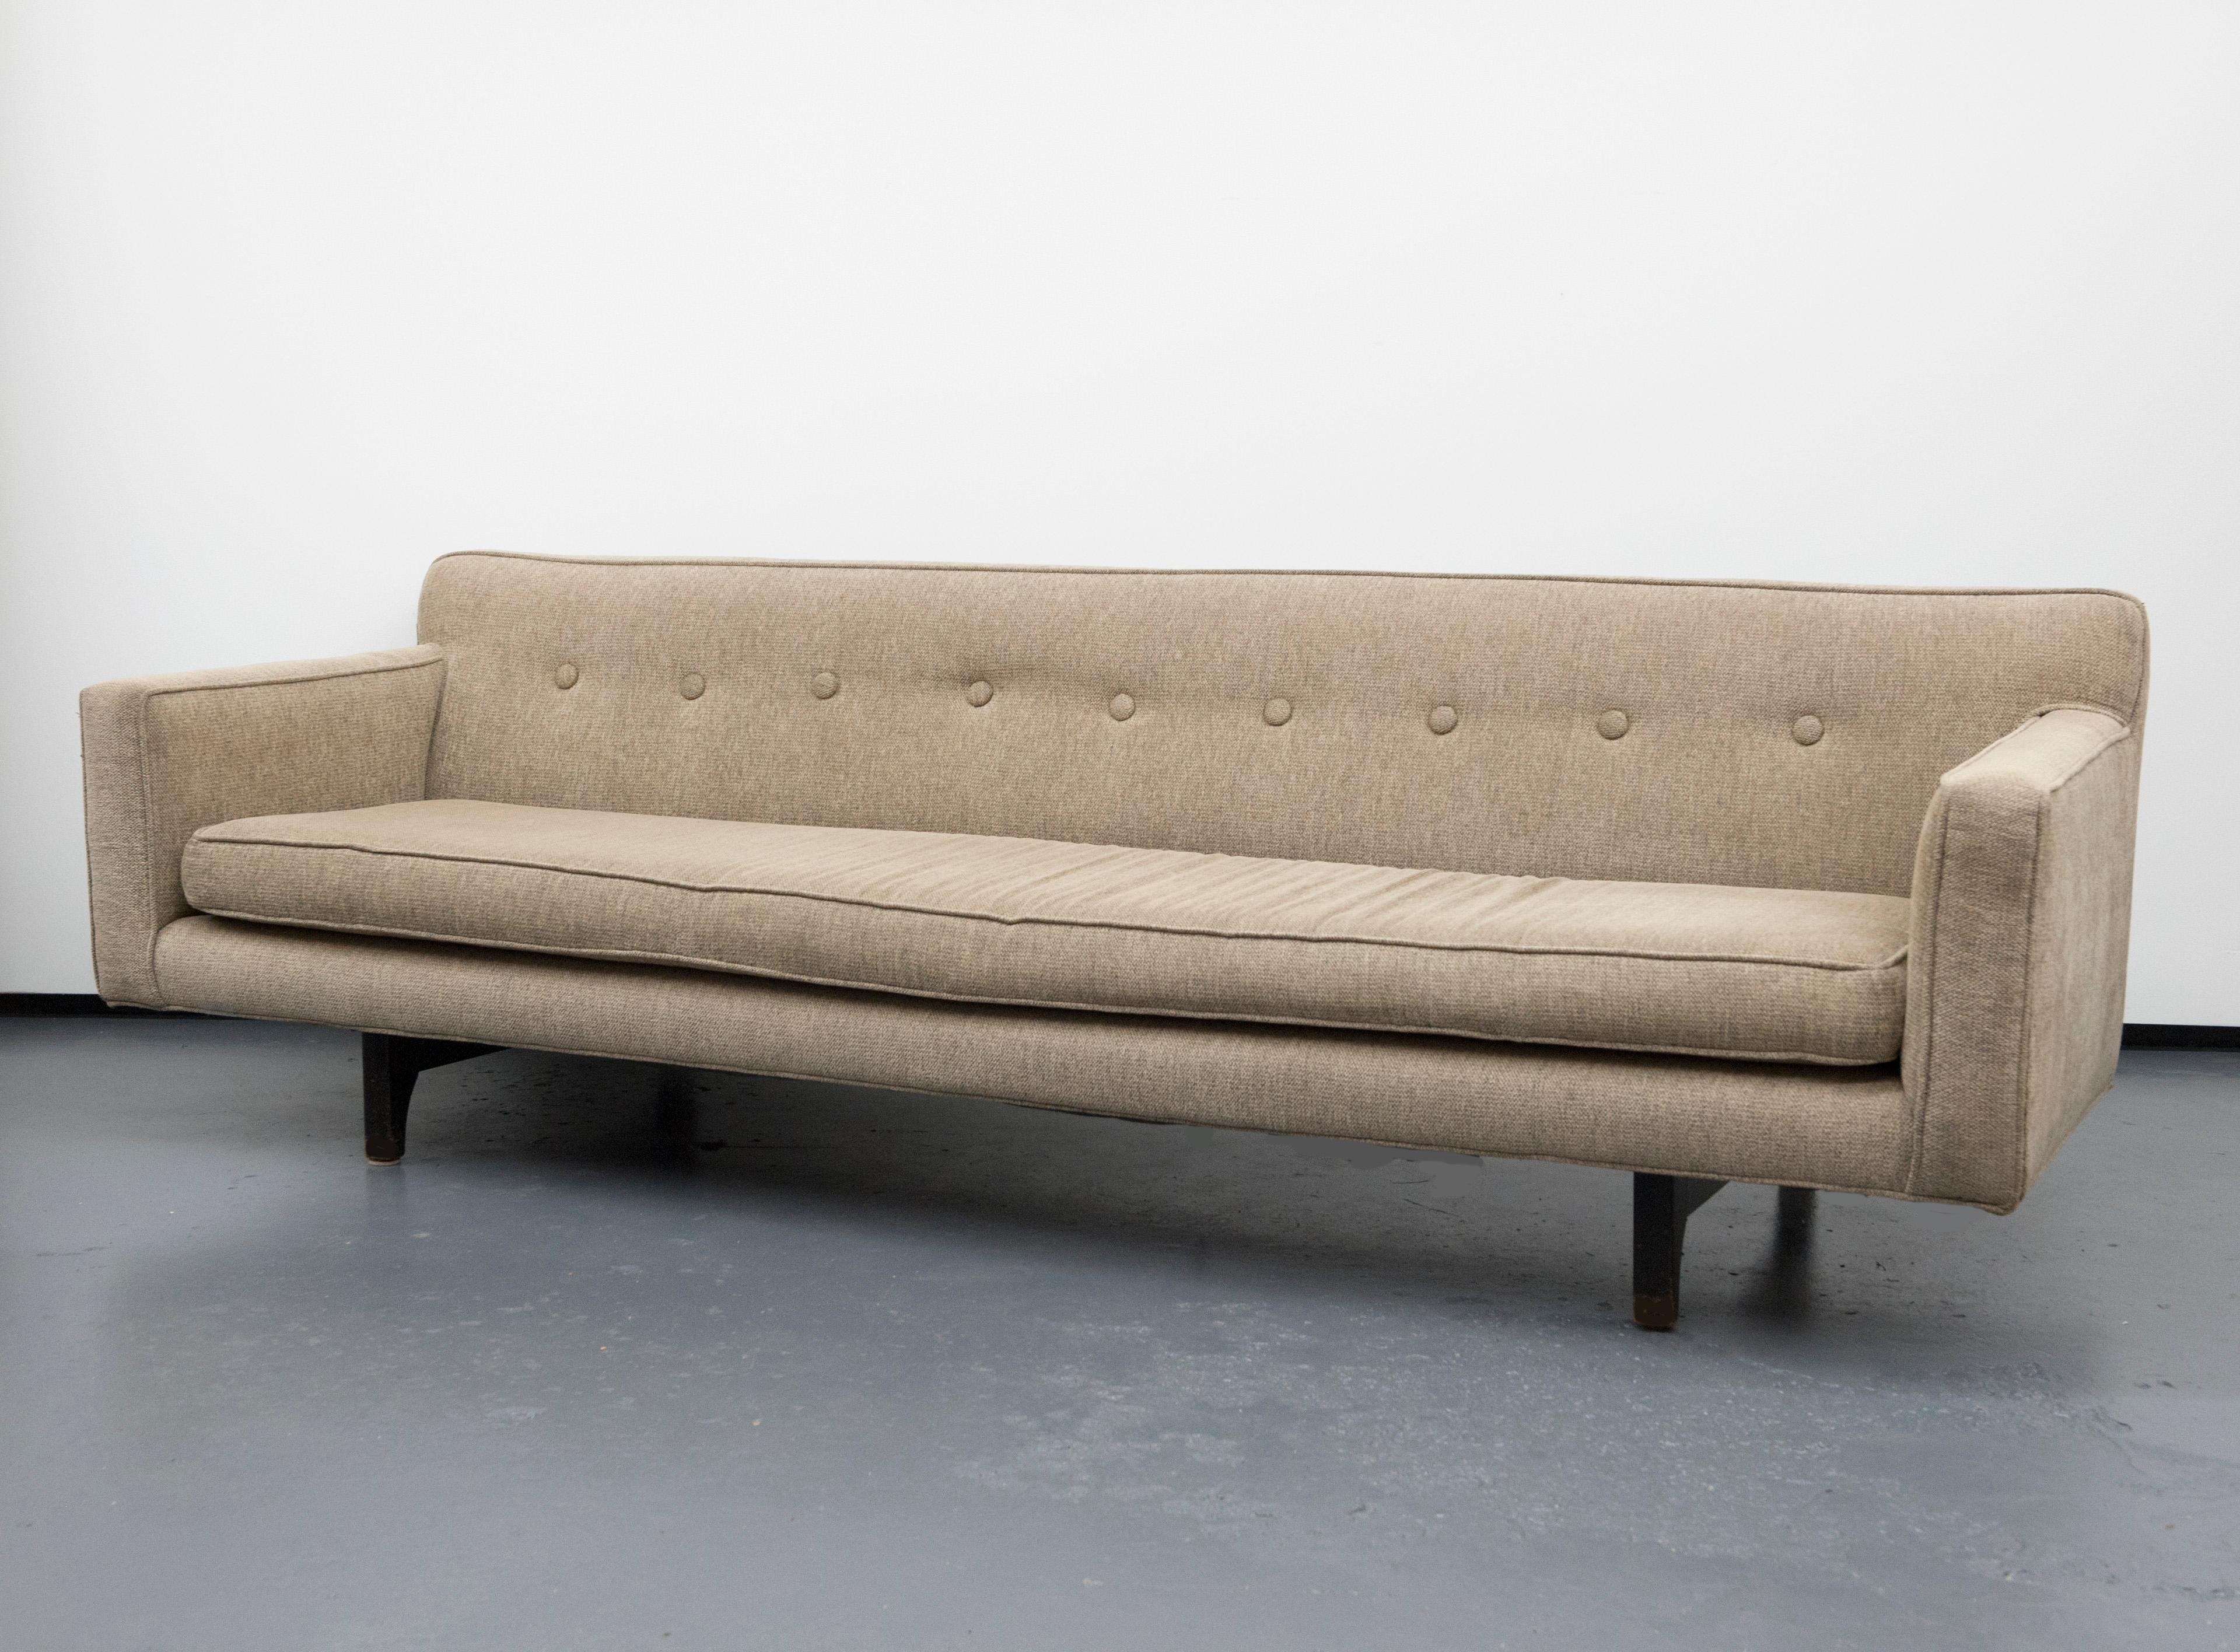 American Classic Modern Long Dunbar Sofa with Brackets by Edward Wormley